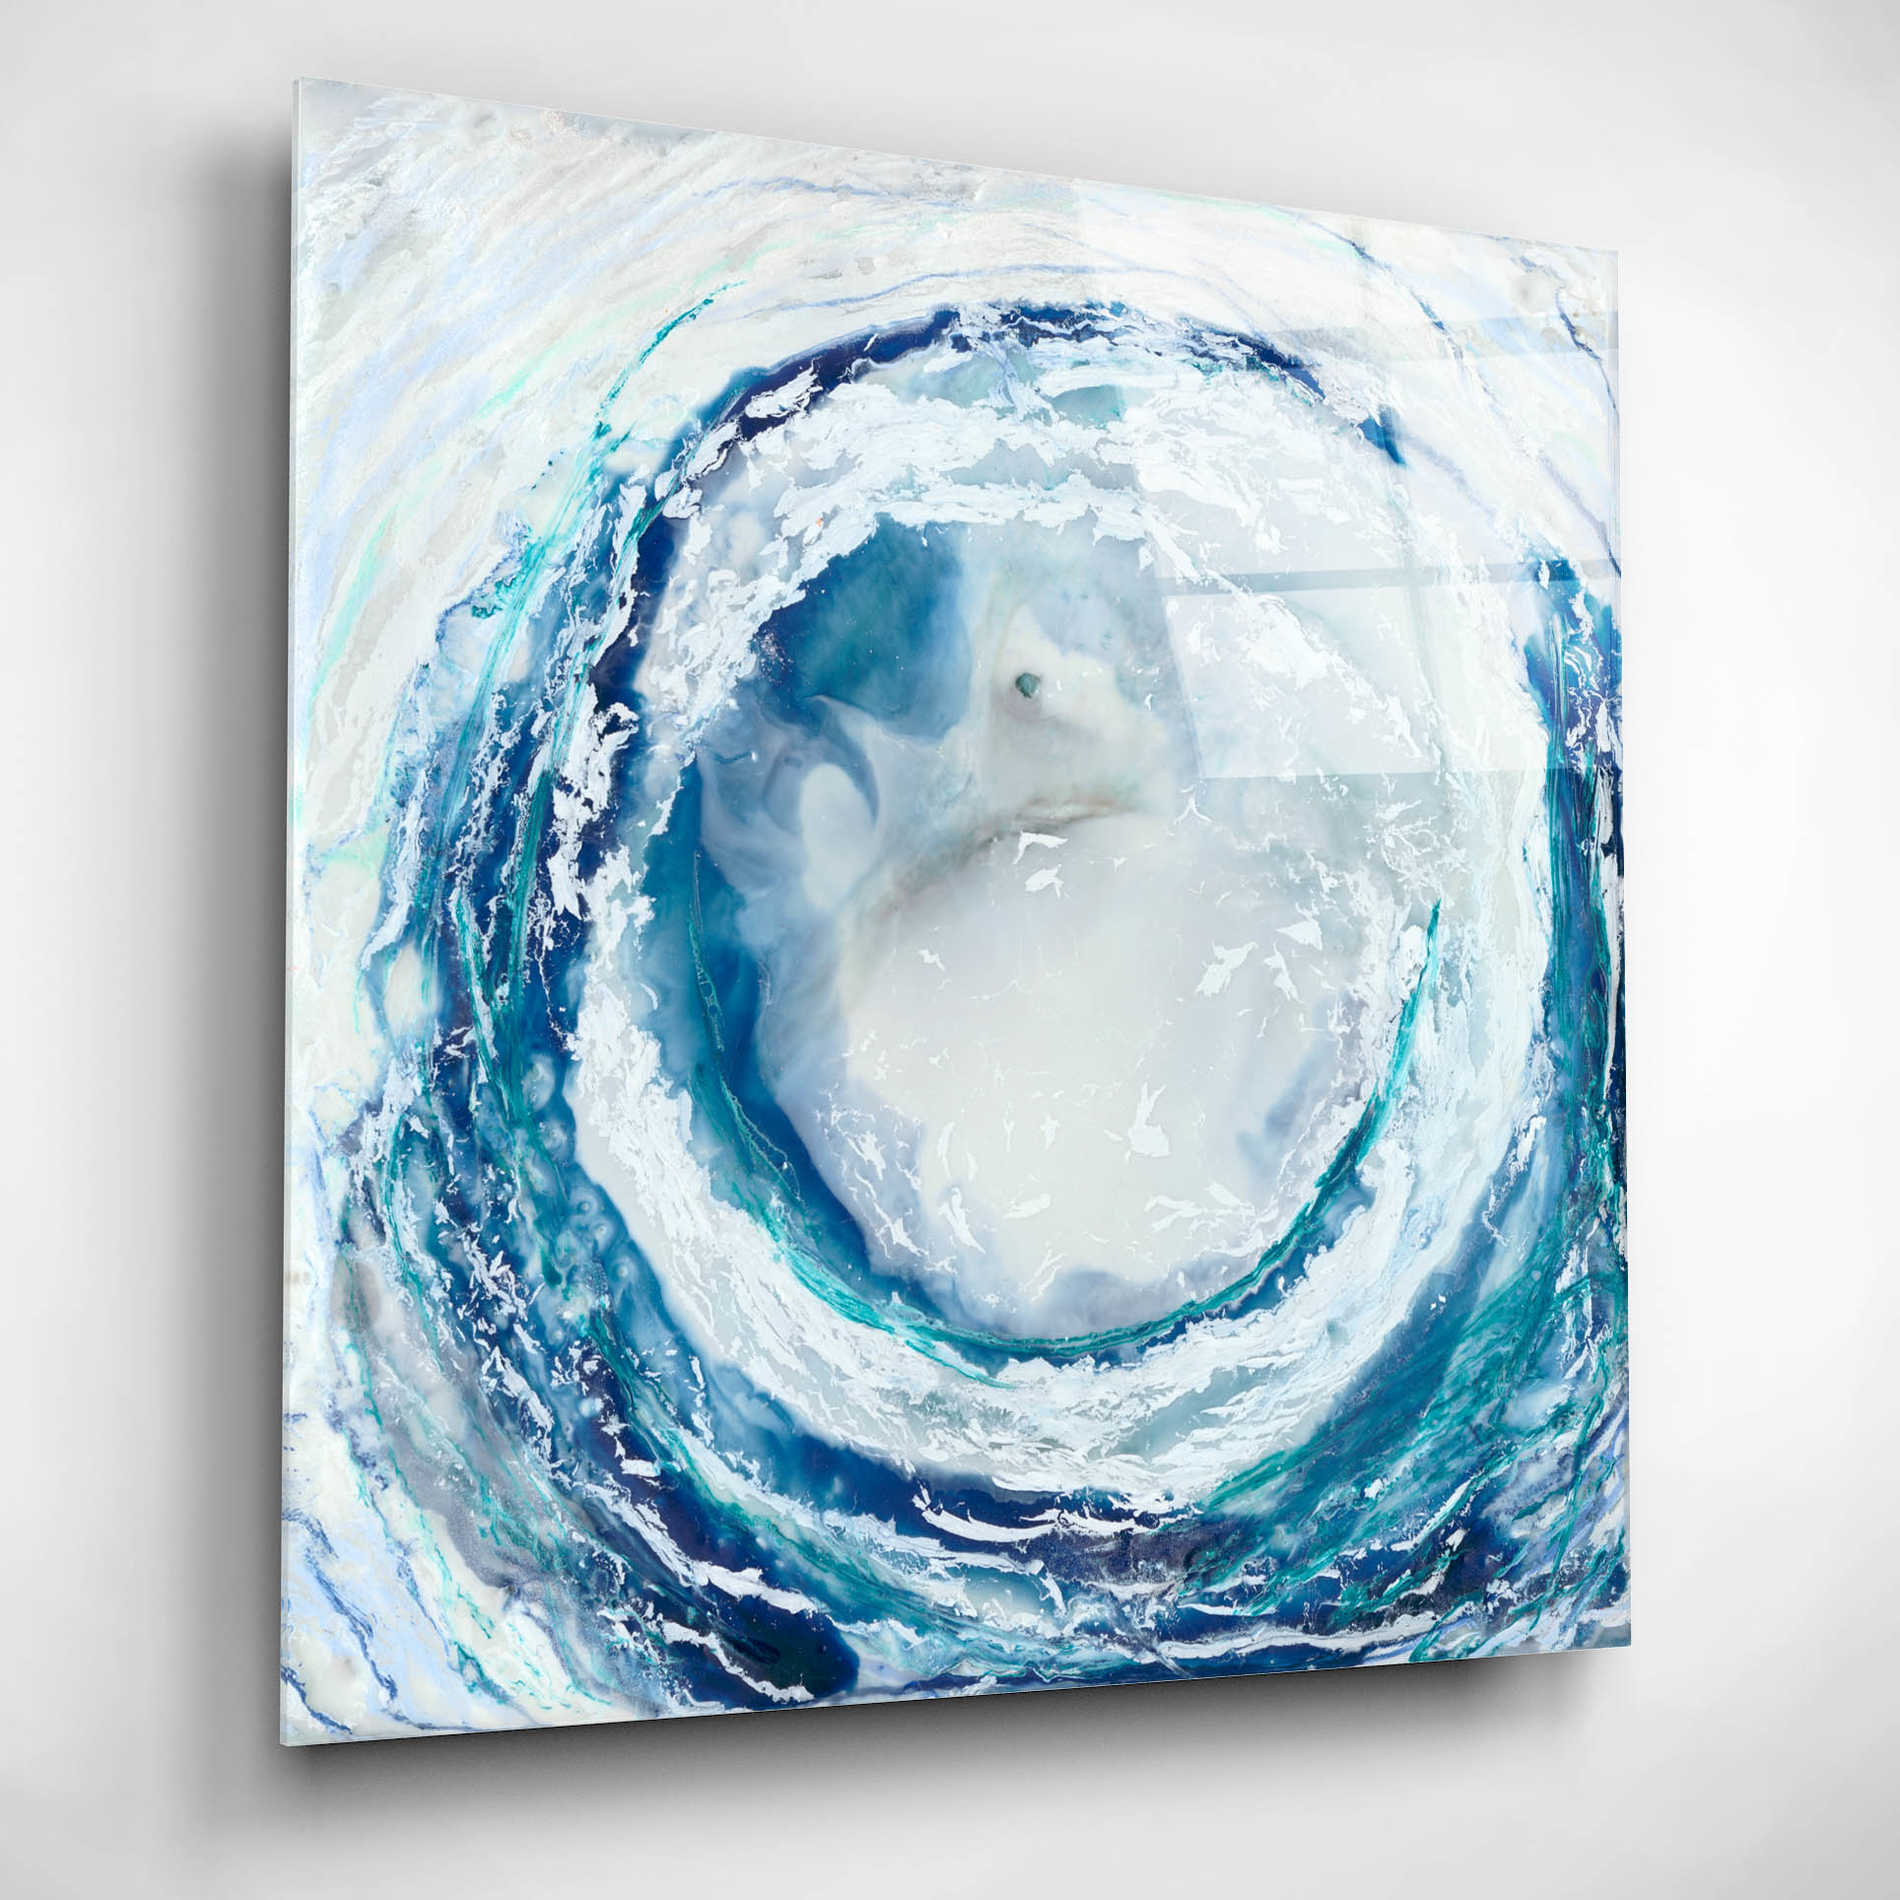 Epic Art 'Ocean Eye II' by Renee W Stramel, Acrylic Glass Wall Art,12x12